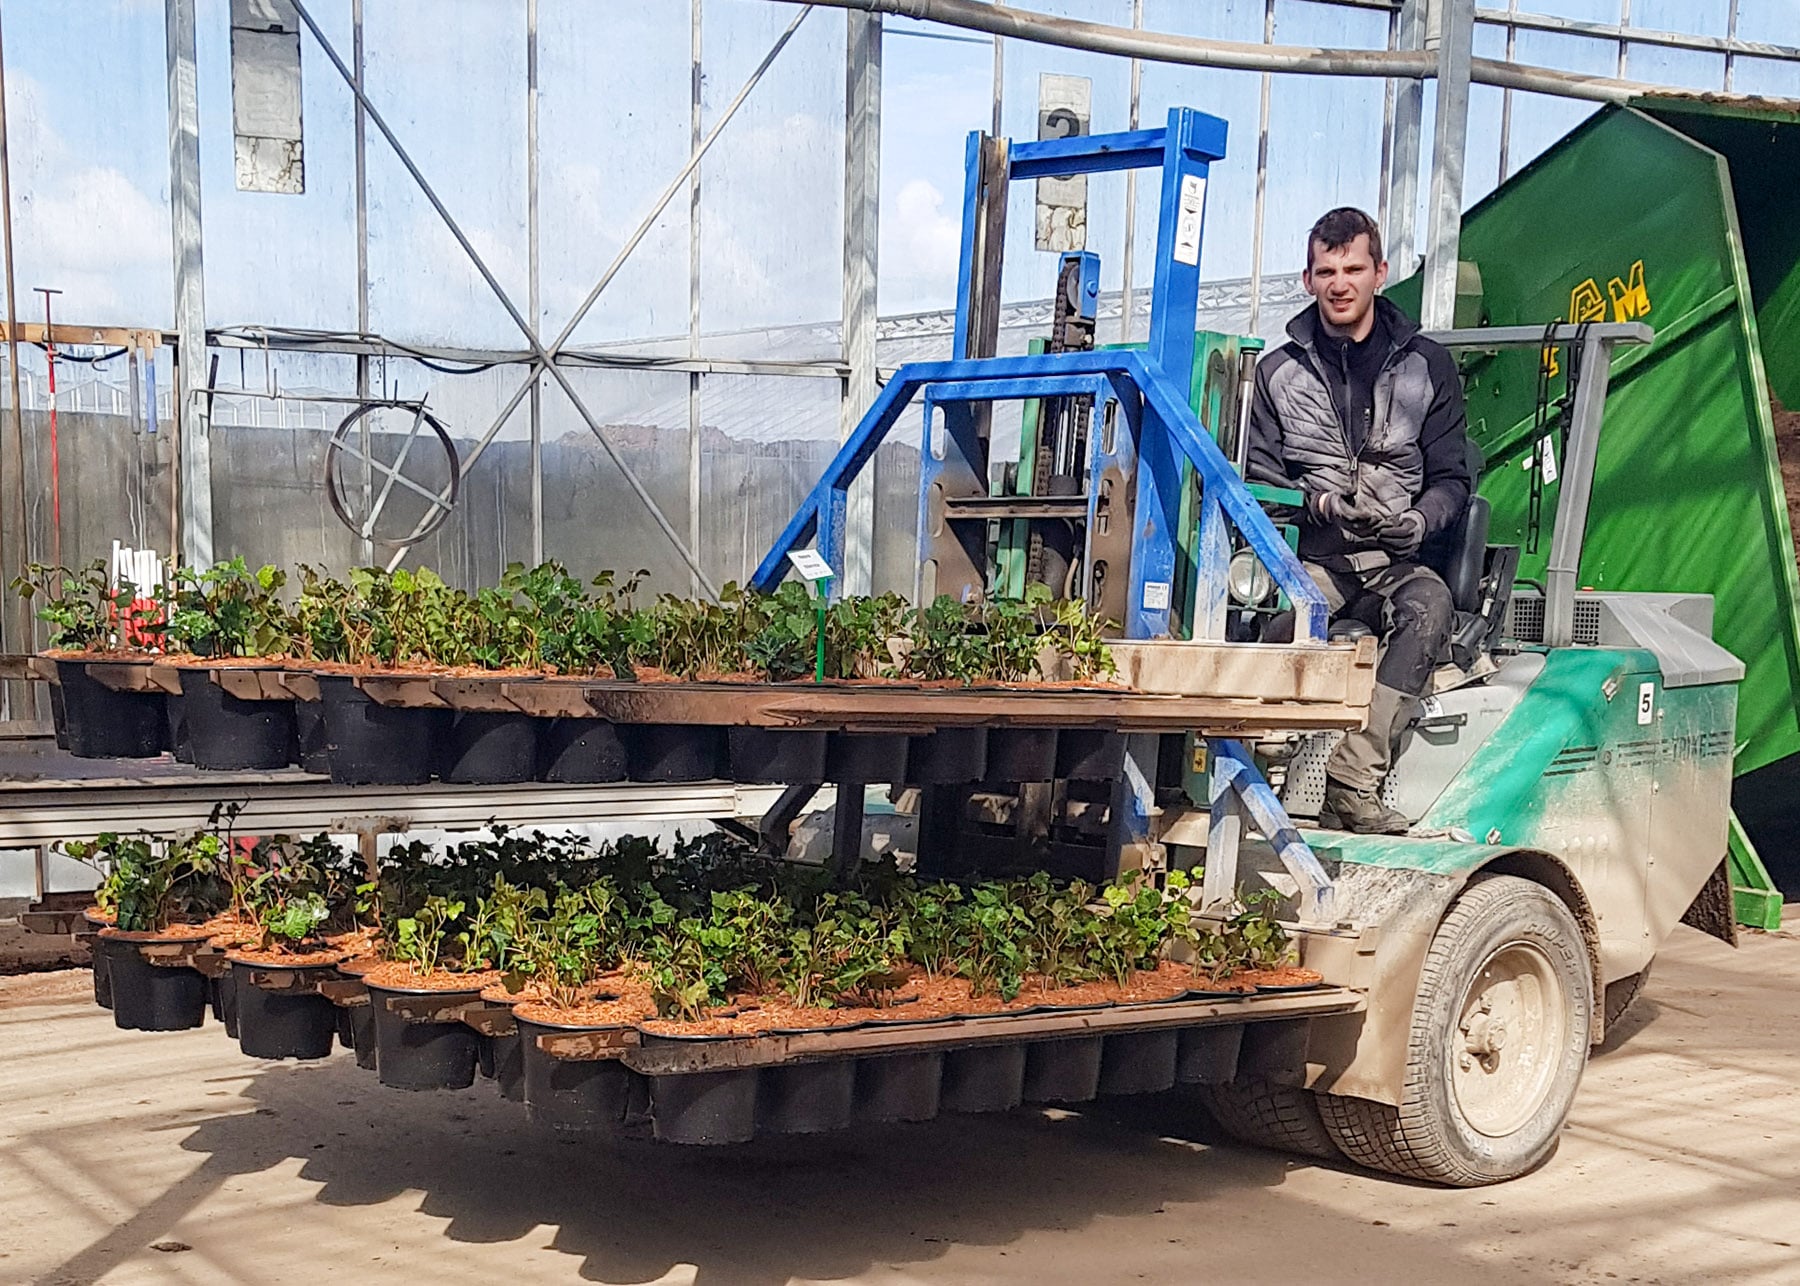 Pawel kører nypottede planter ud i marken med space-o-mat trucken.